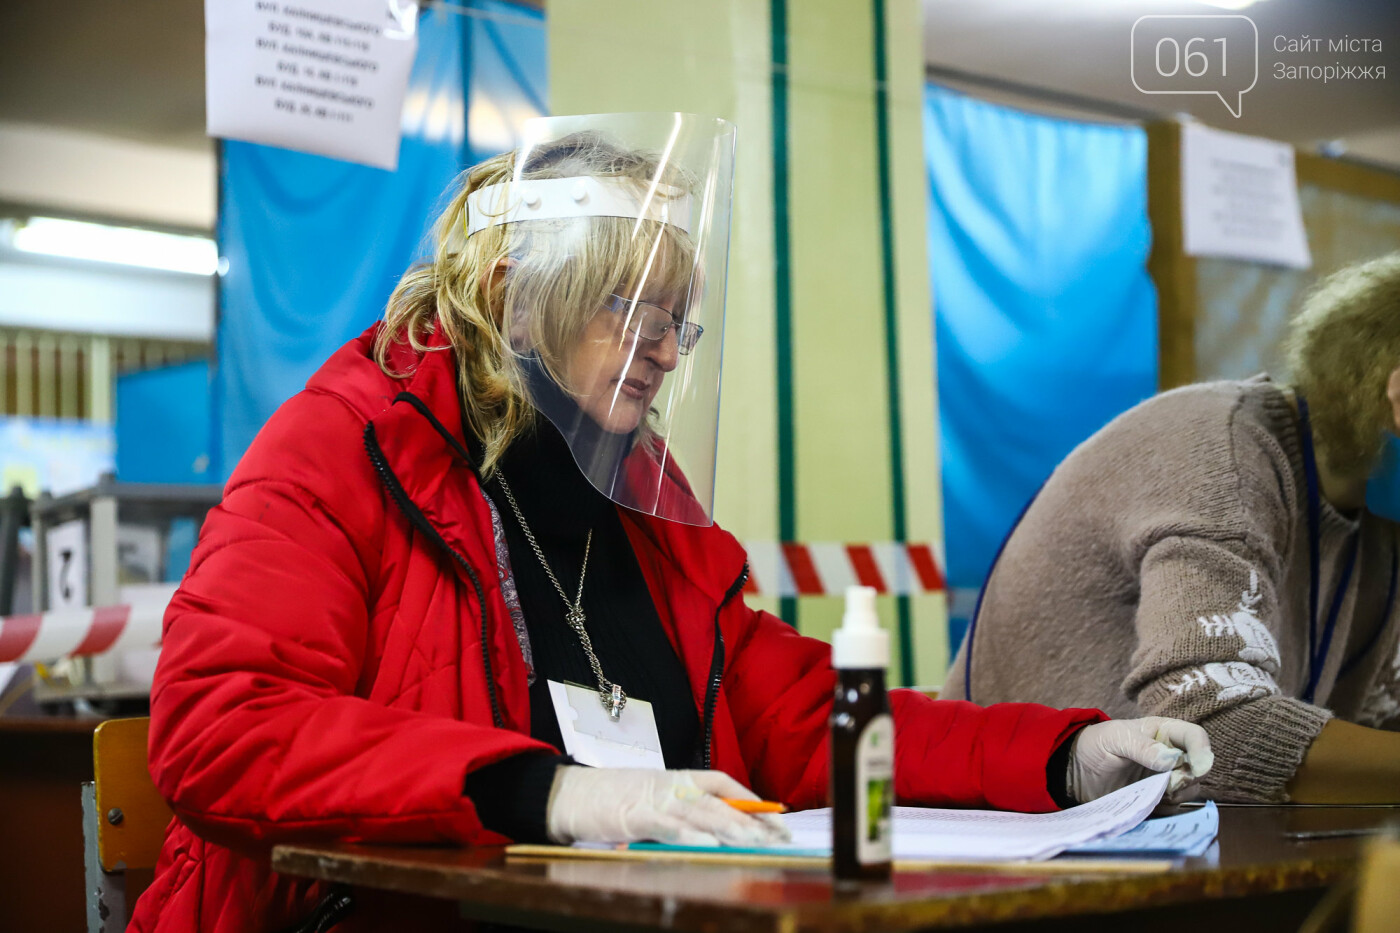 Выборы в условиях карантина: как запорожцы выбирают мэра и депутатов, - ФОТОРЕПОРТАЖ, фото-15